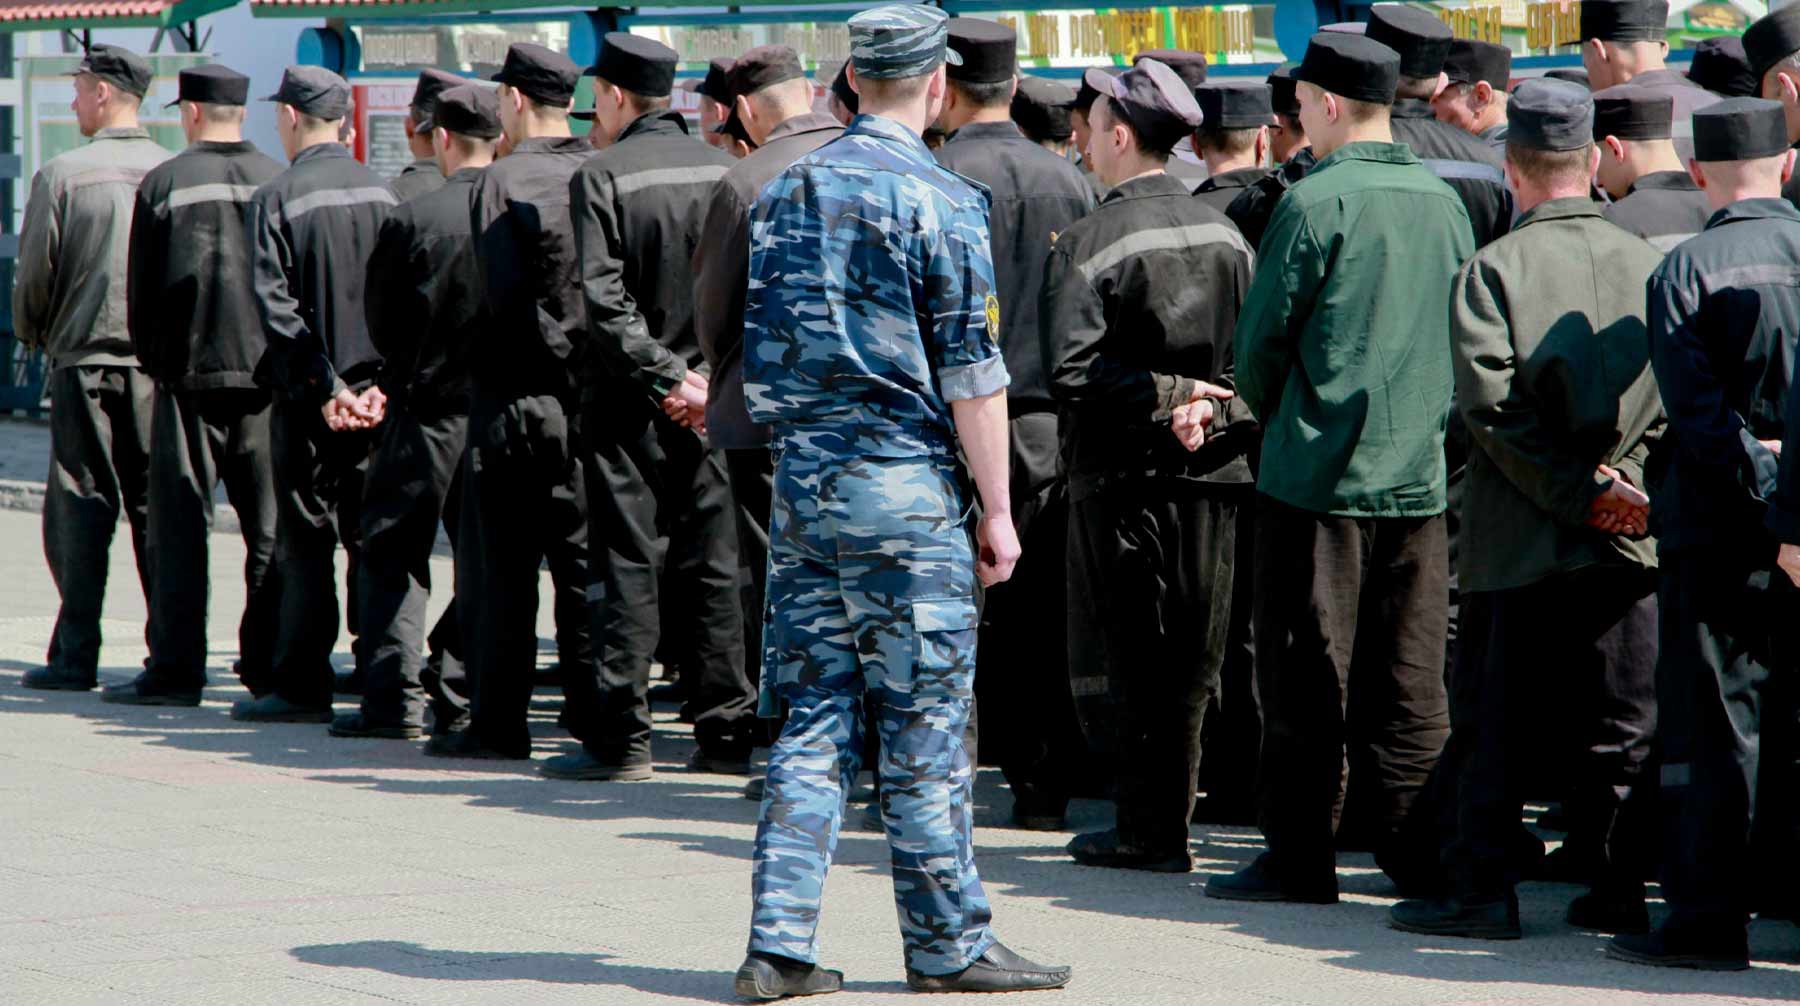 Dailystorm - Сотрудники ярославской колонии получили условный срок за избиения осужденных